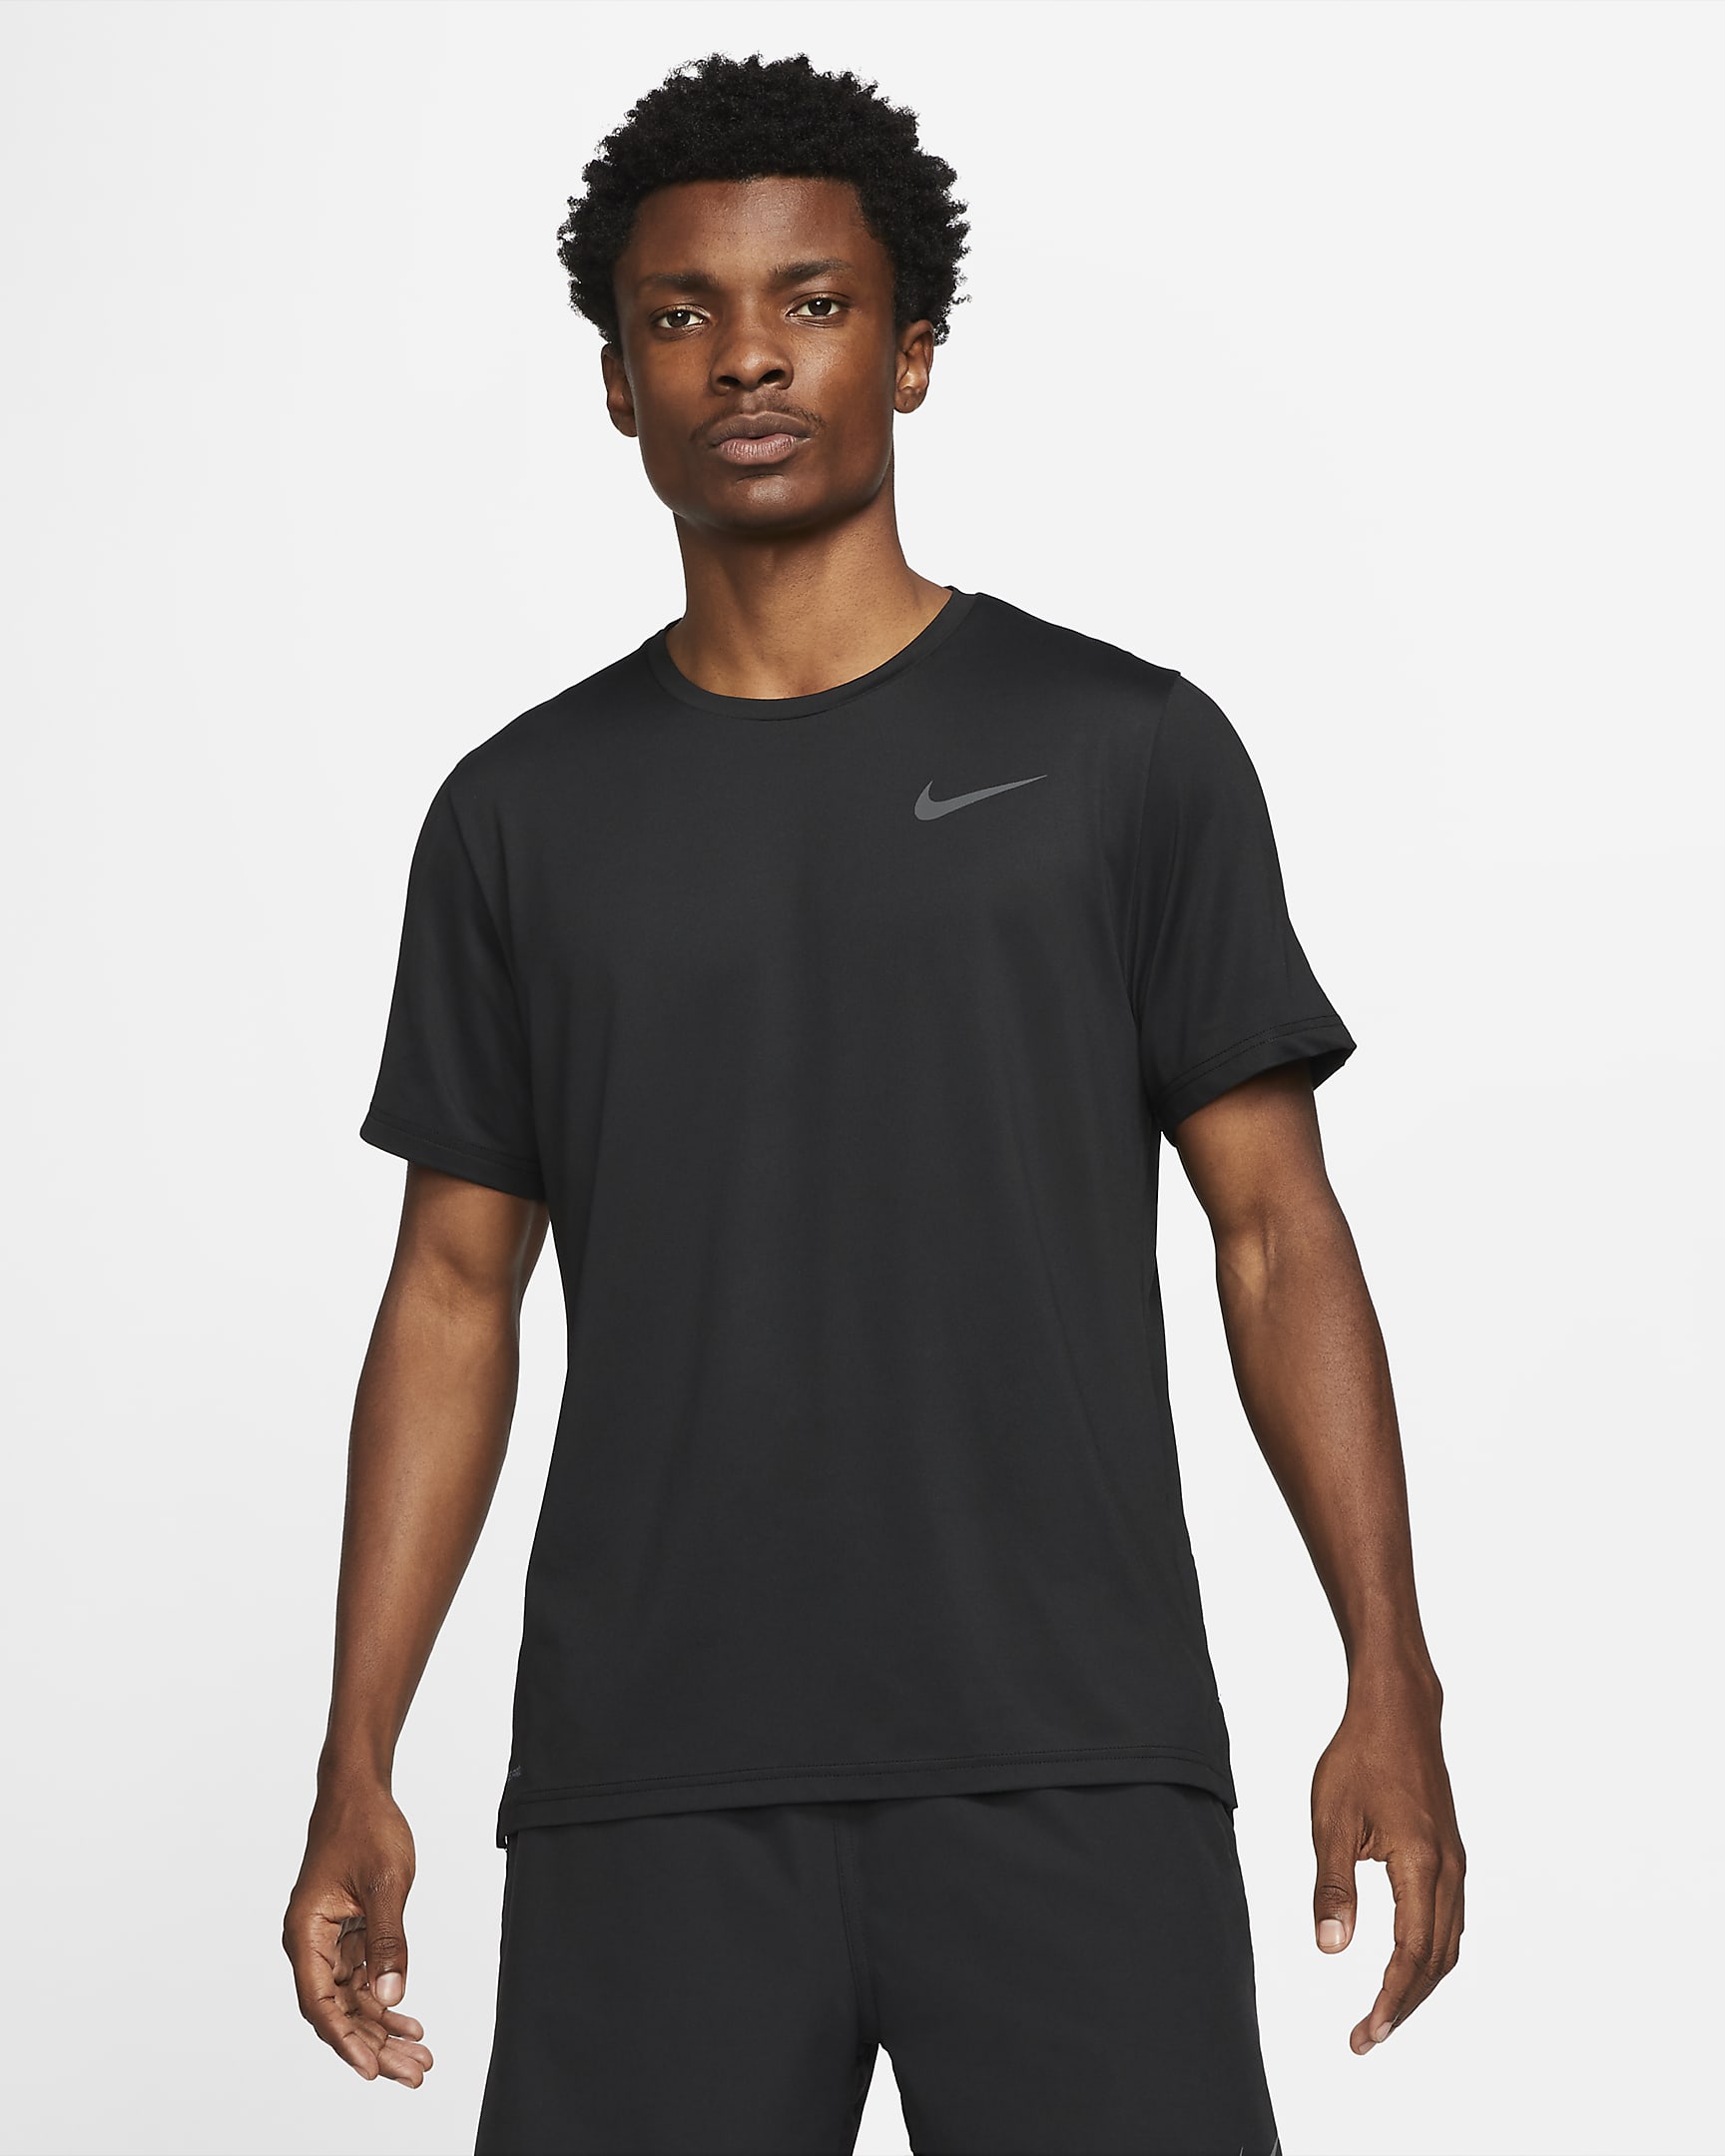 Nike Pro Dri-FIT Men's Short-Sleeve Top. Nike AU